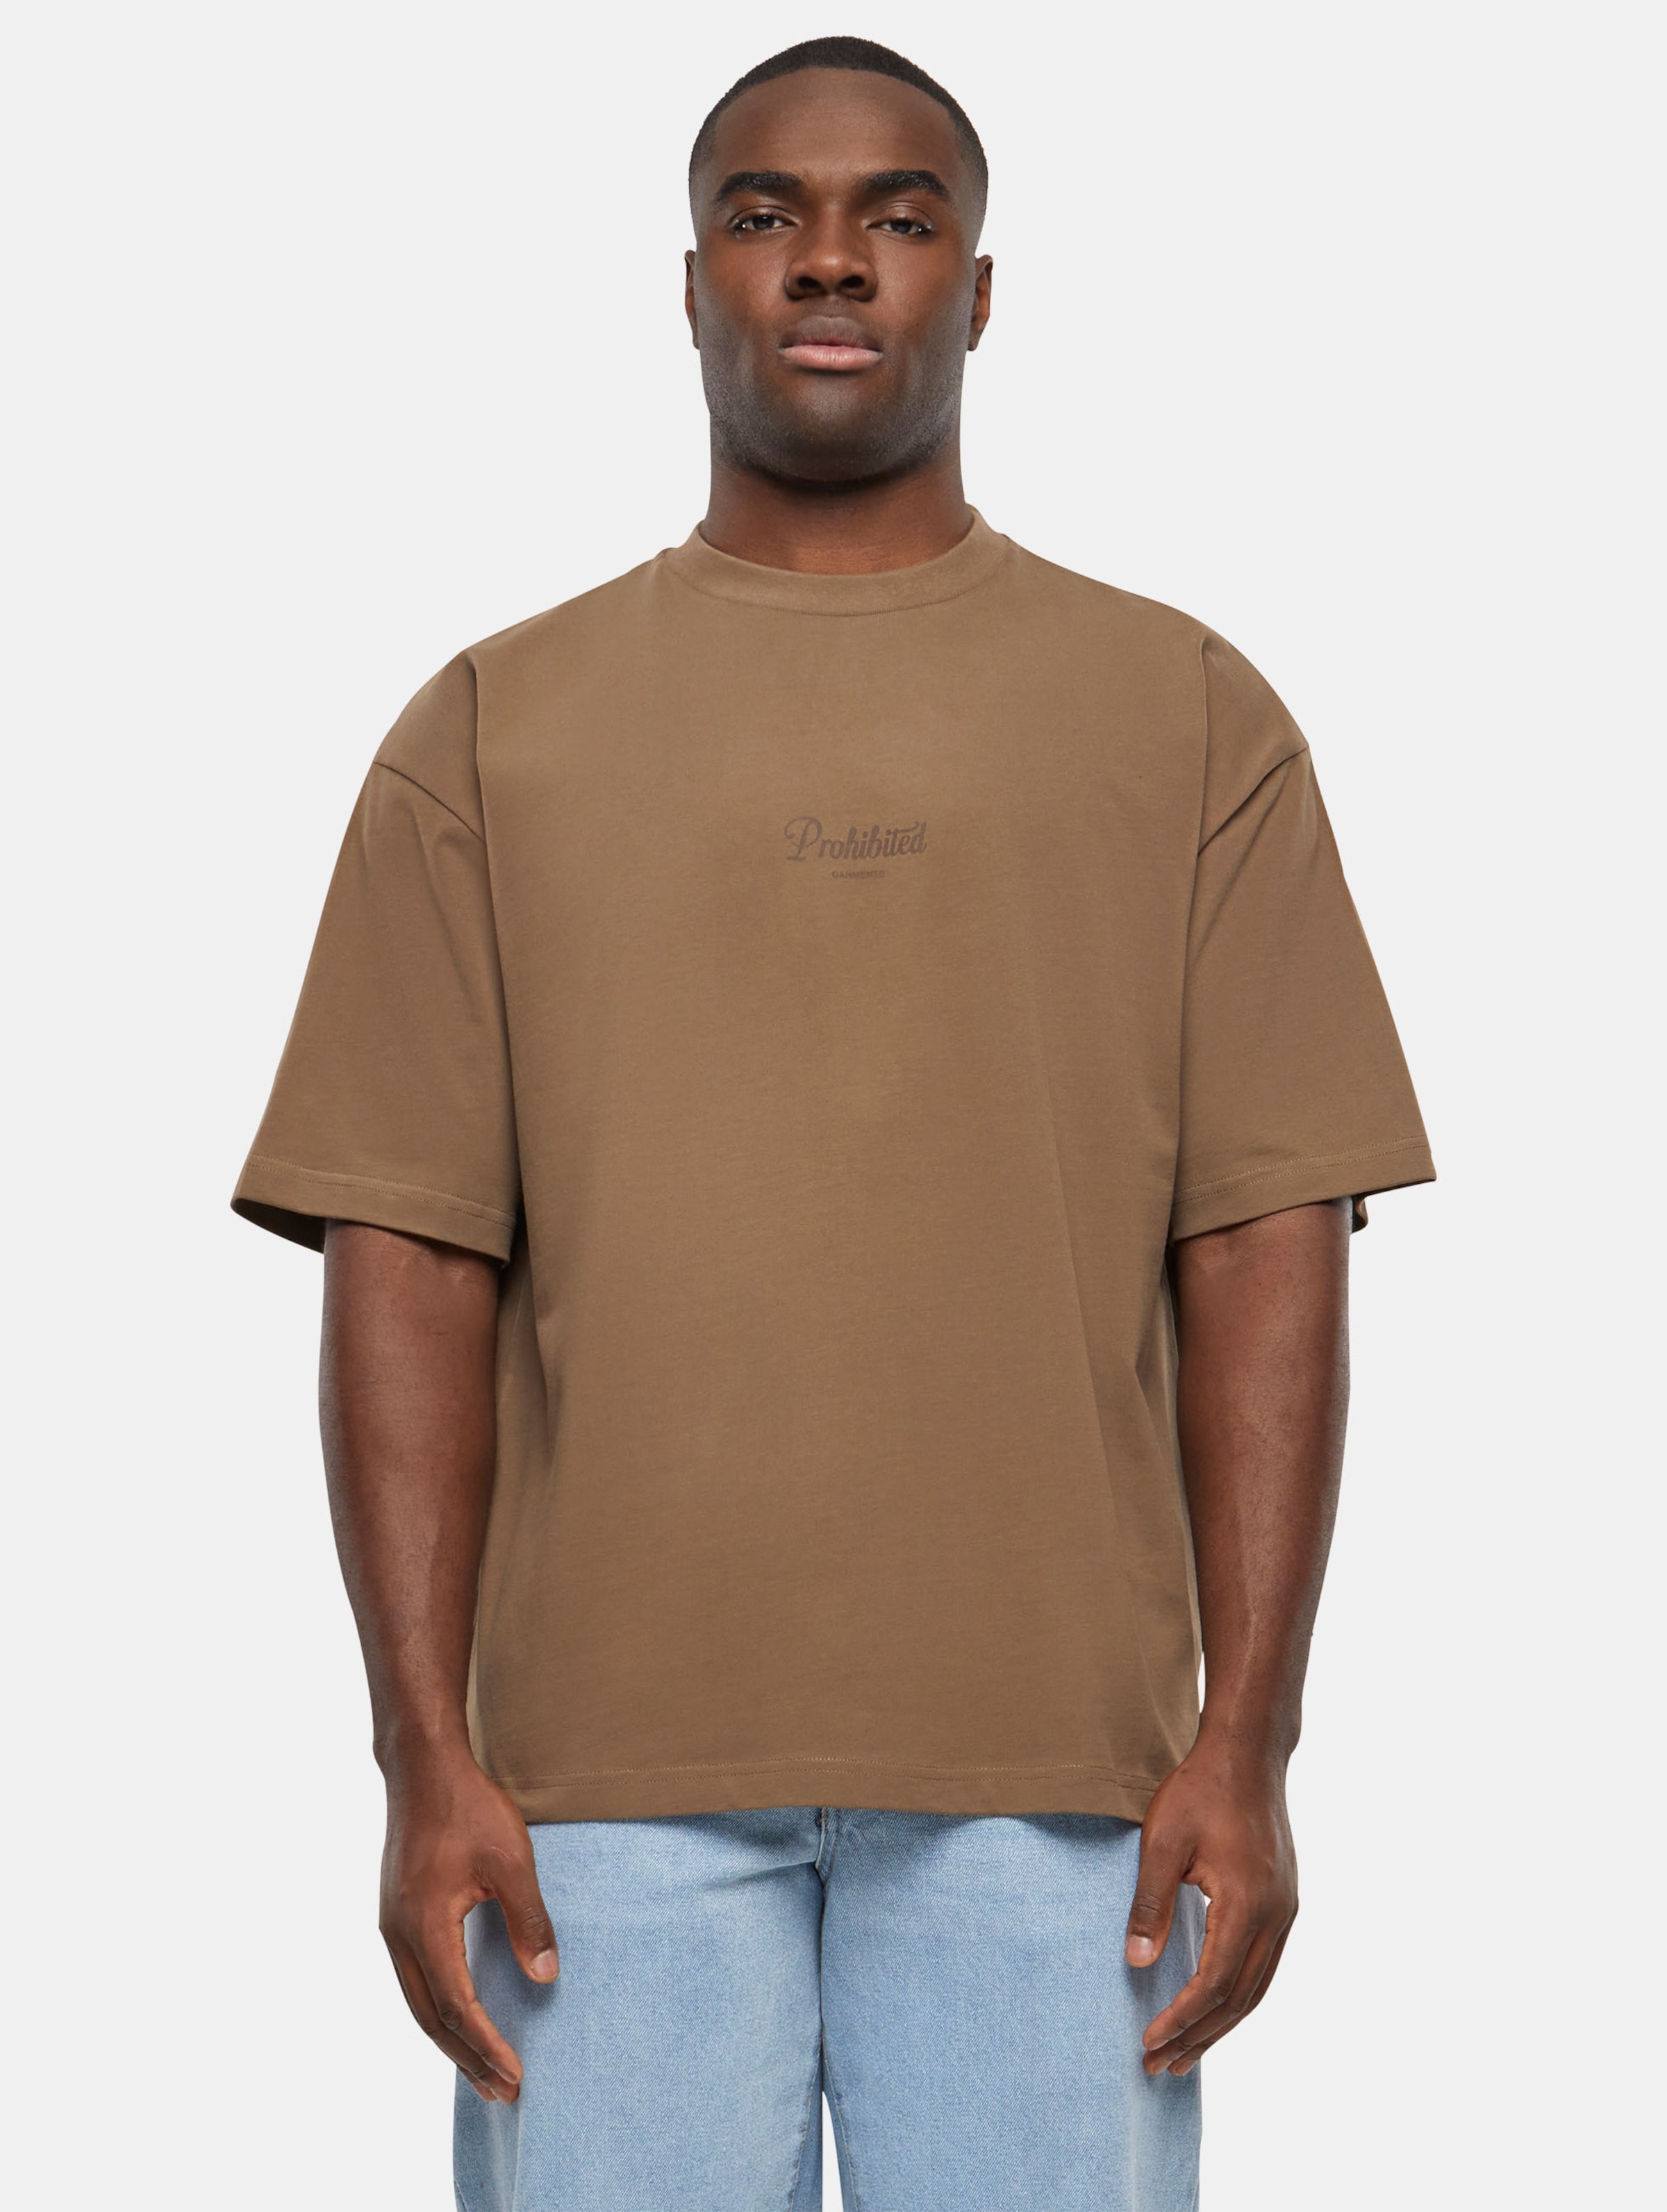 Prohibited PB Garment T Shirts Frauen,Männer,Unisex op kleur bruin, Maat S